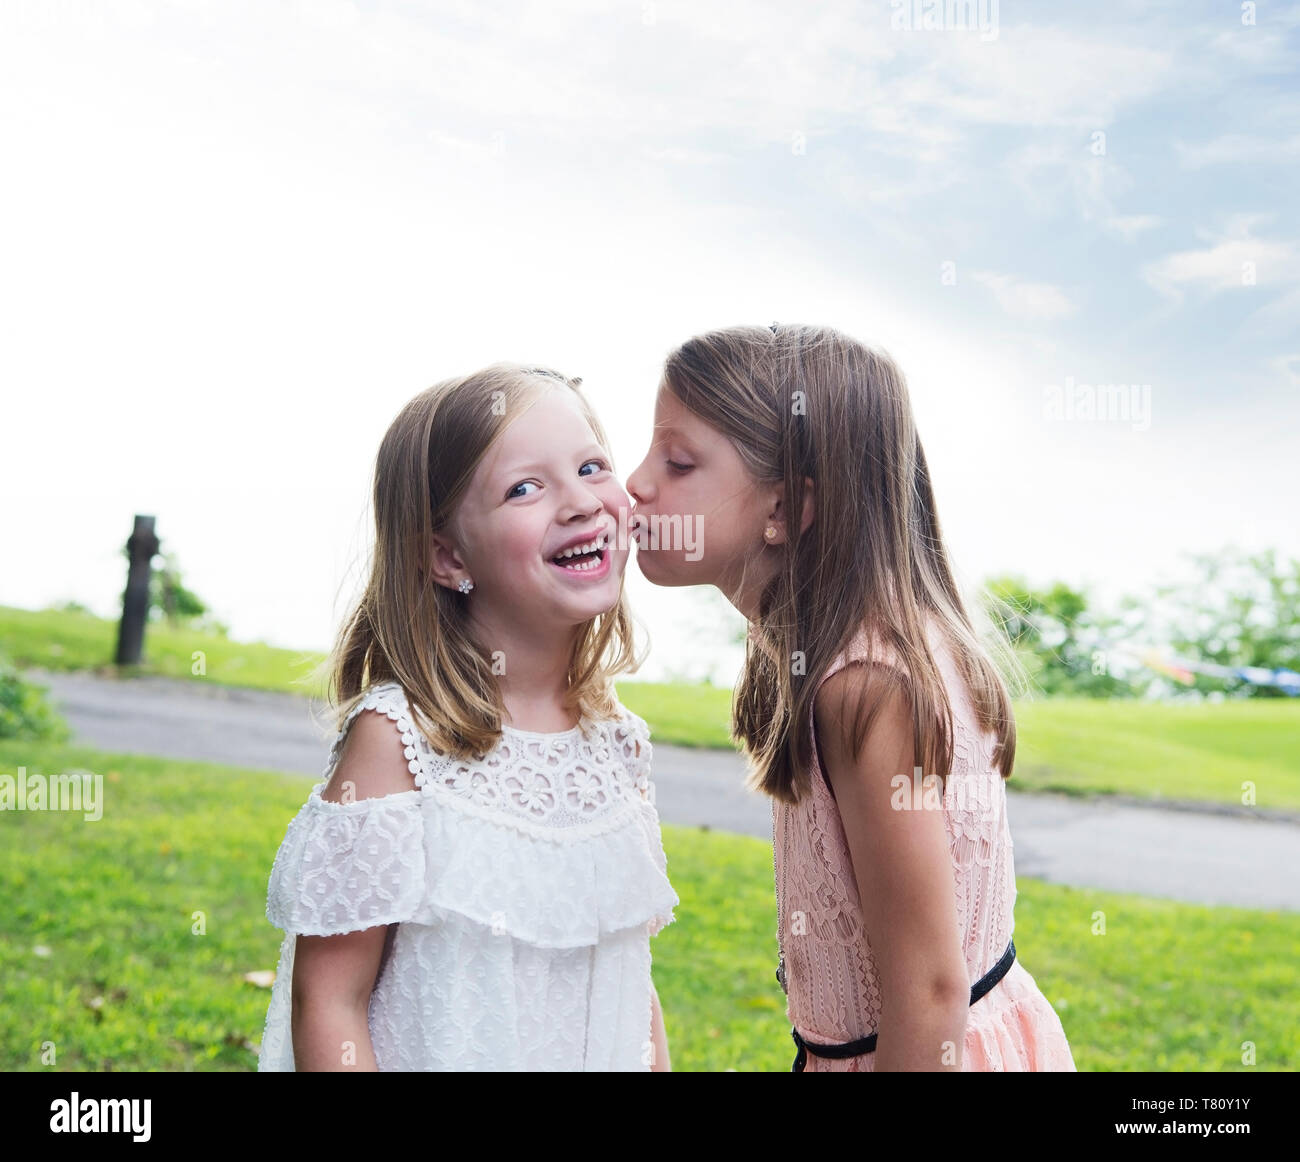 Dos Hermanas, jóvenes niños besos en un parque durante los meses de verano Foto de stock